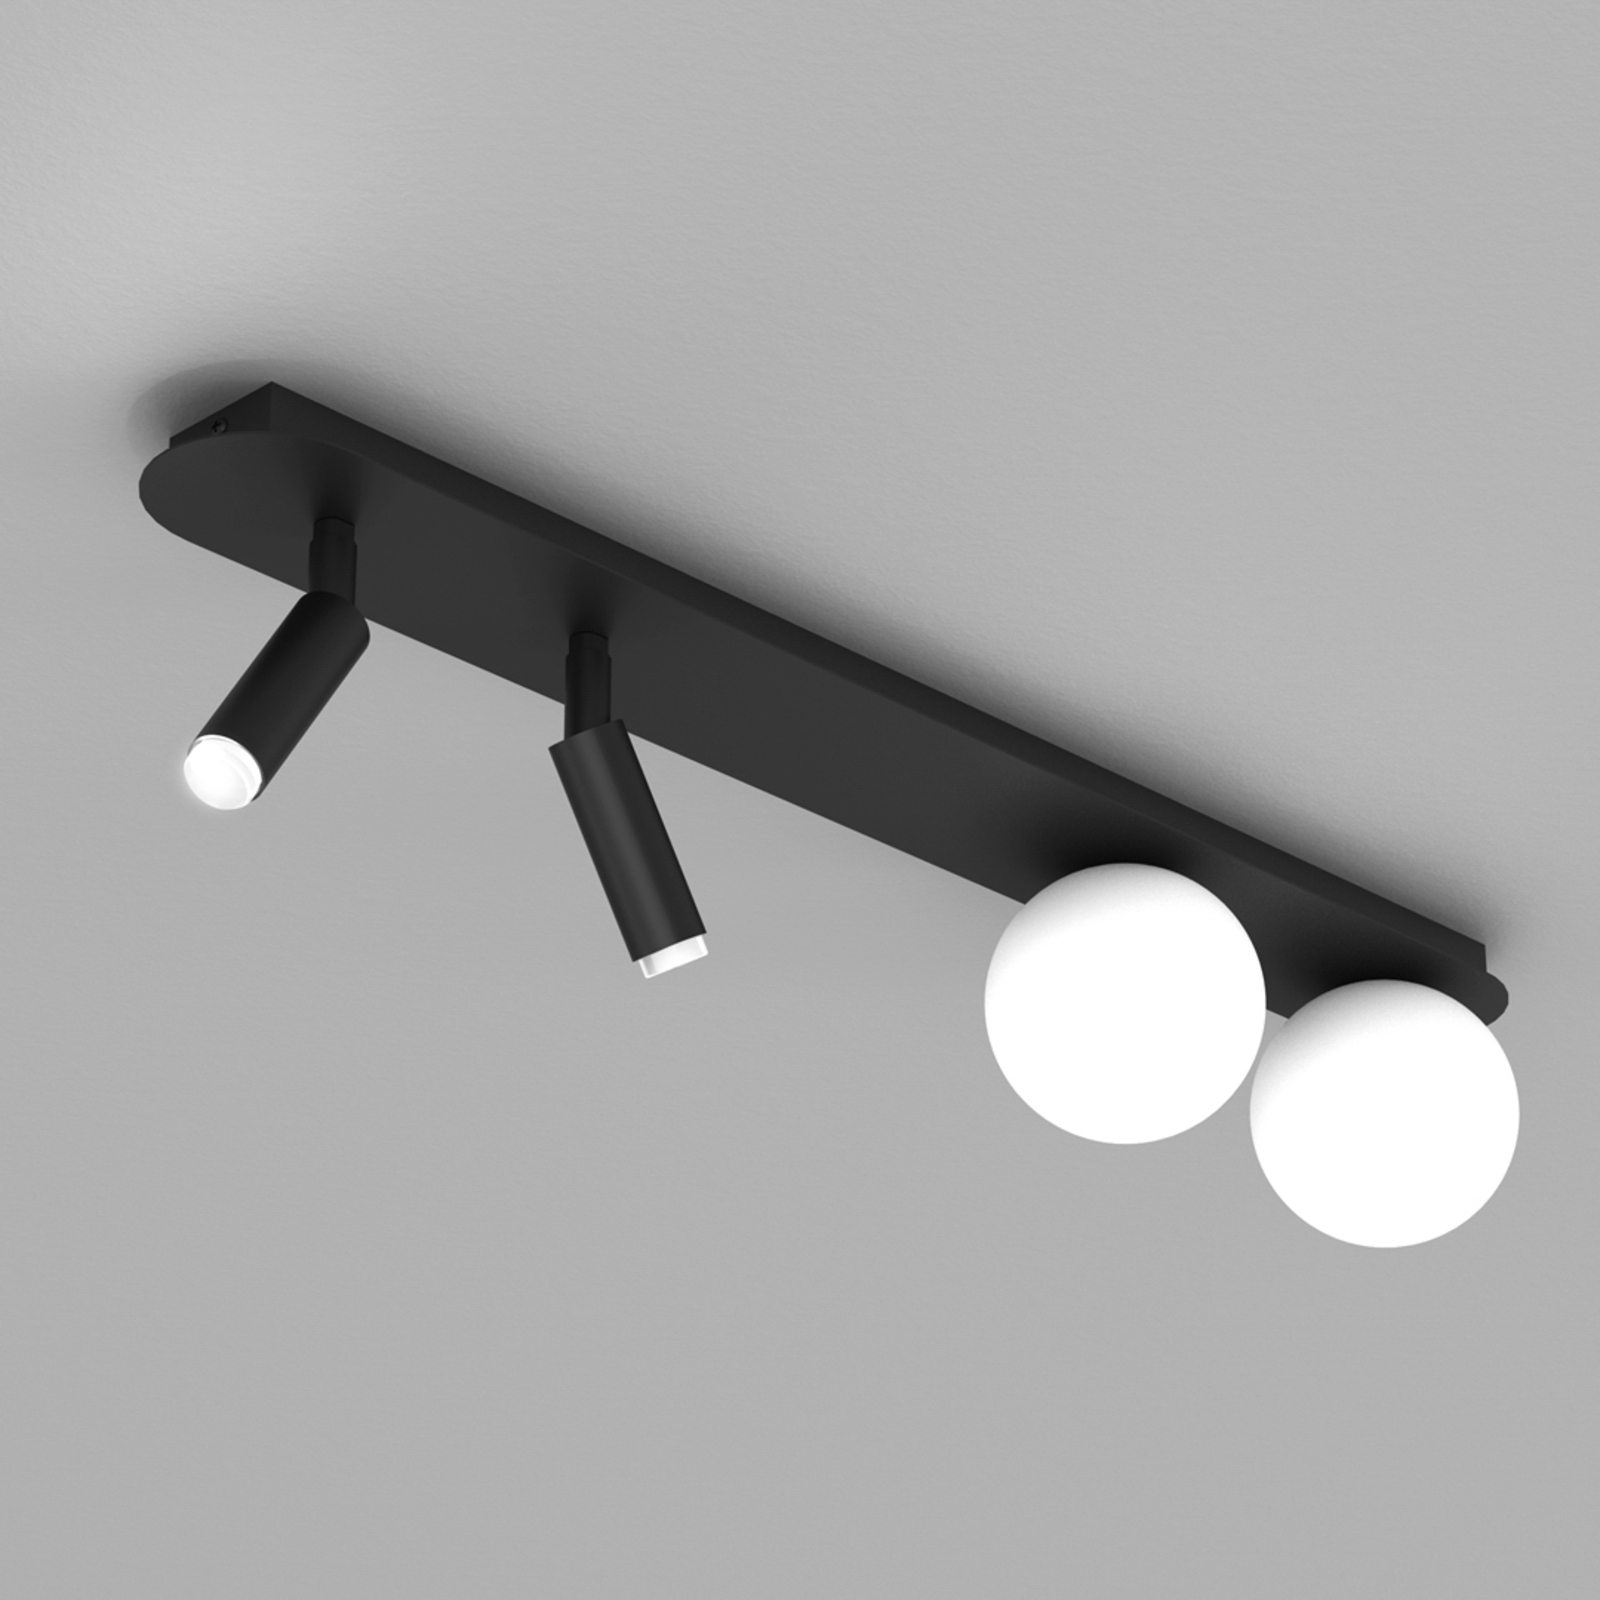 Stropna svetilka Sirio s premičnimi reflektorji, 4-svetlobna